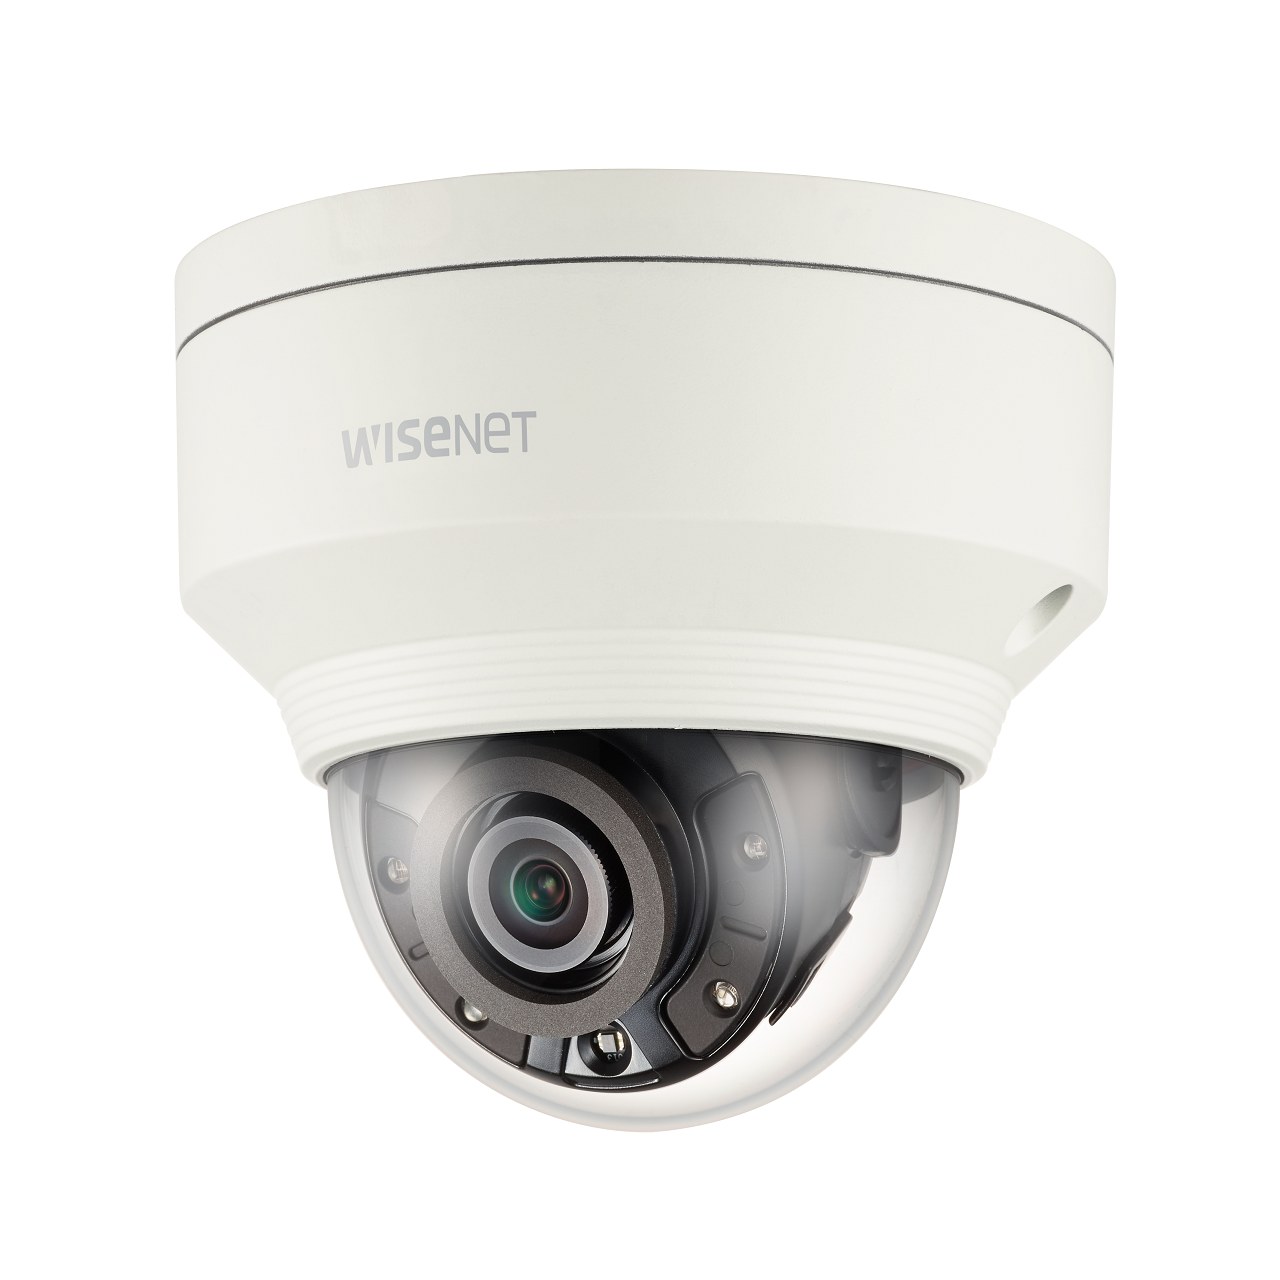 Hanwha WiseNet XNV-8030R 5 Megapixel IR Netzwerk IP Outdoor Dome Kamera mit Bewegungserkennung